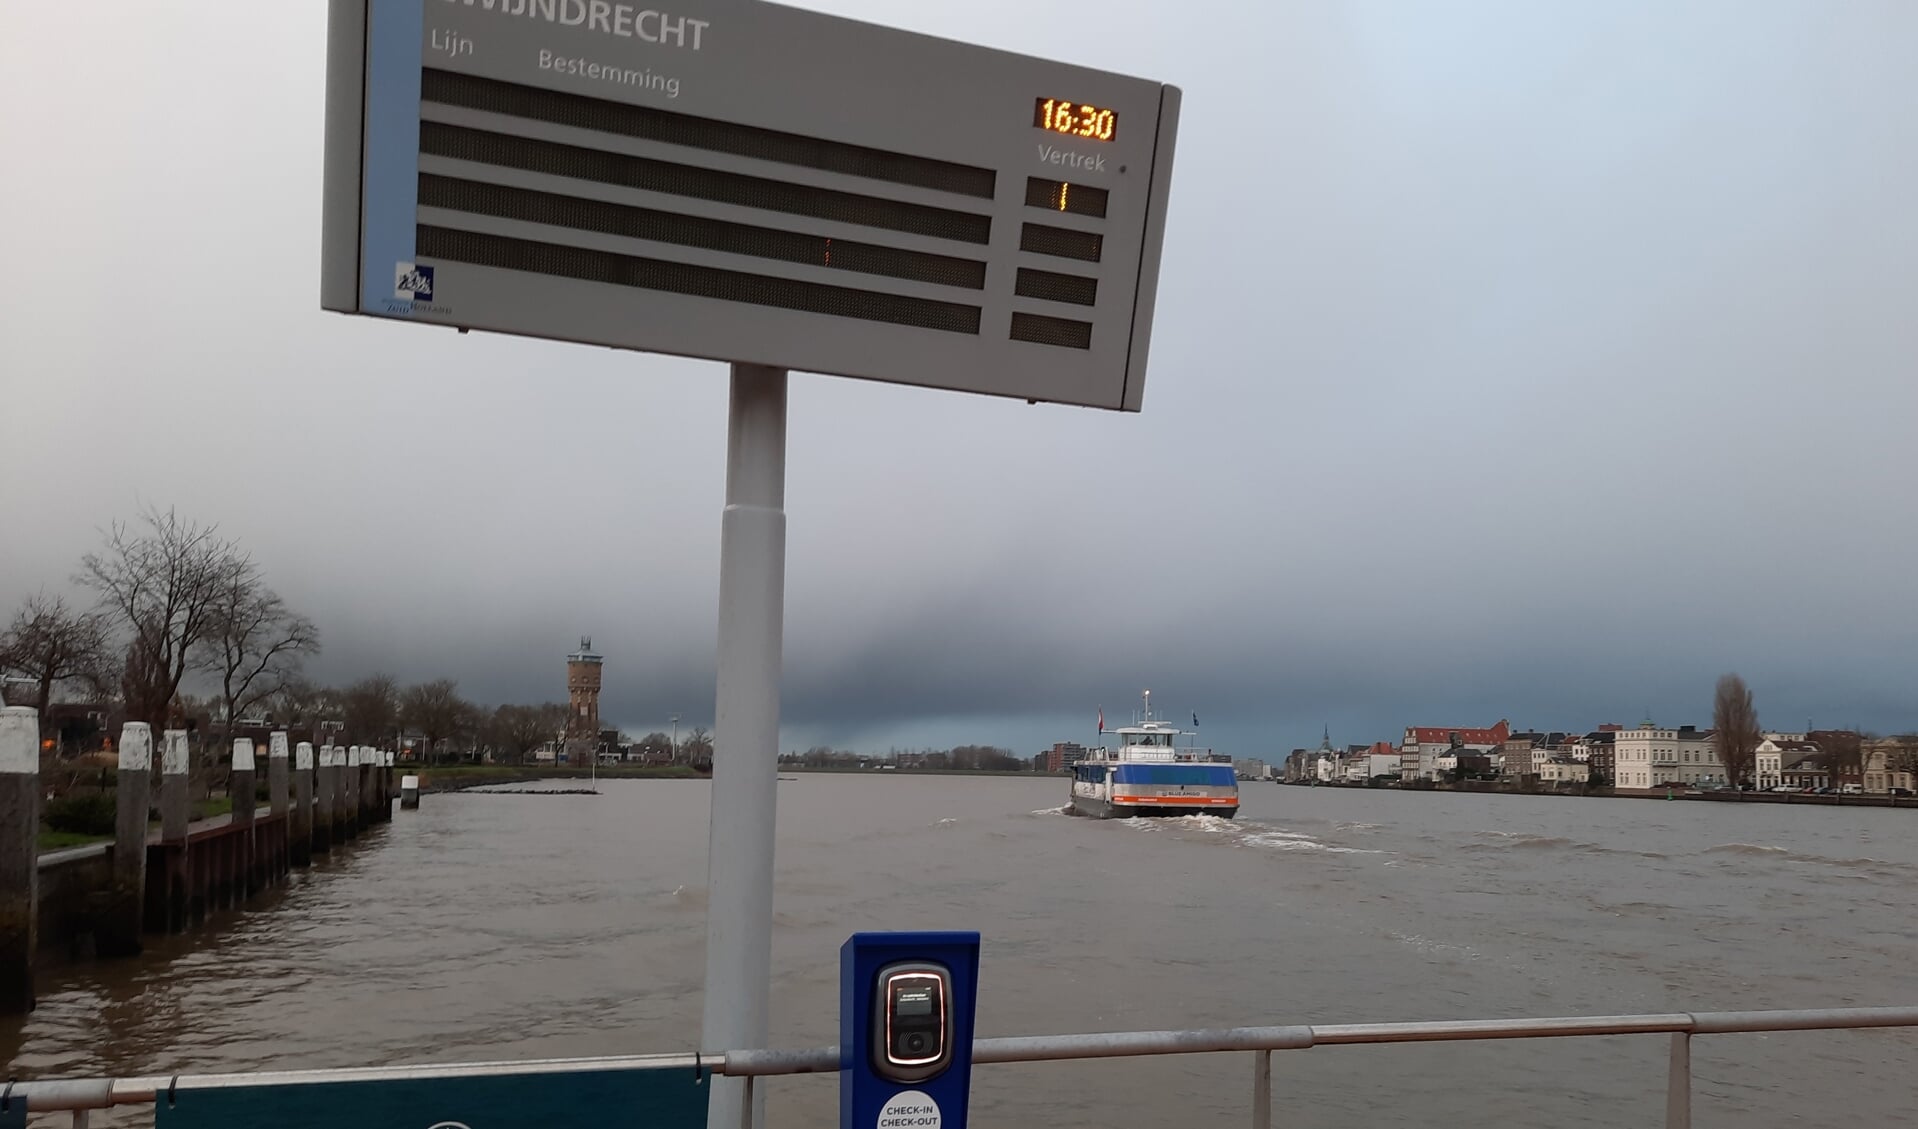 De veerboot van Blue Amigo op weg naar halte Merwekade.